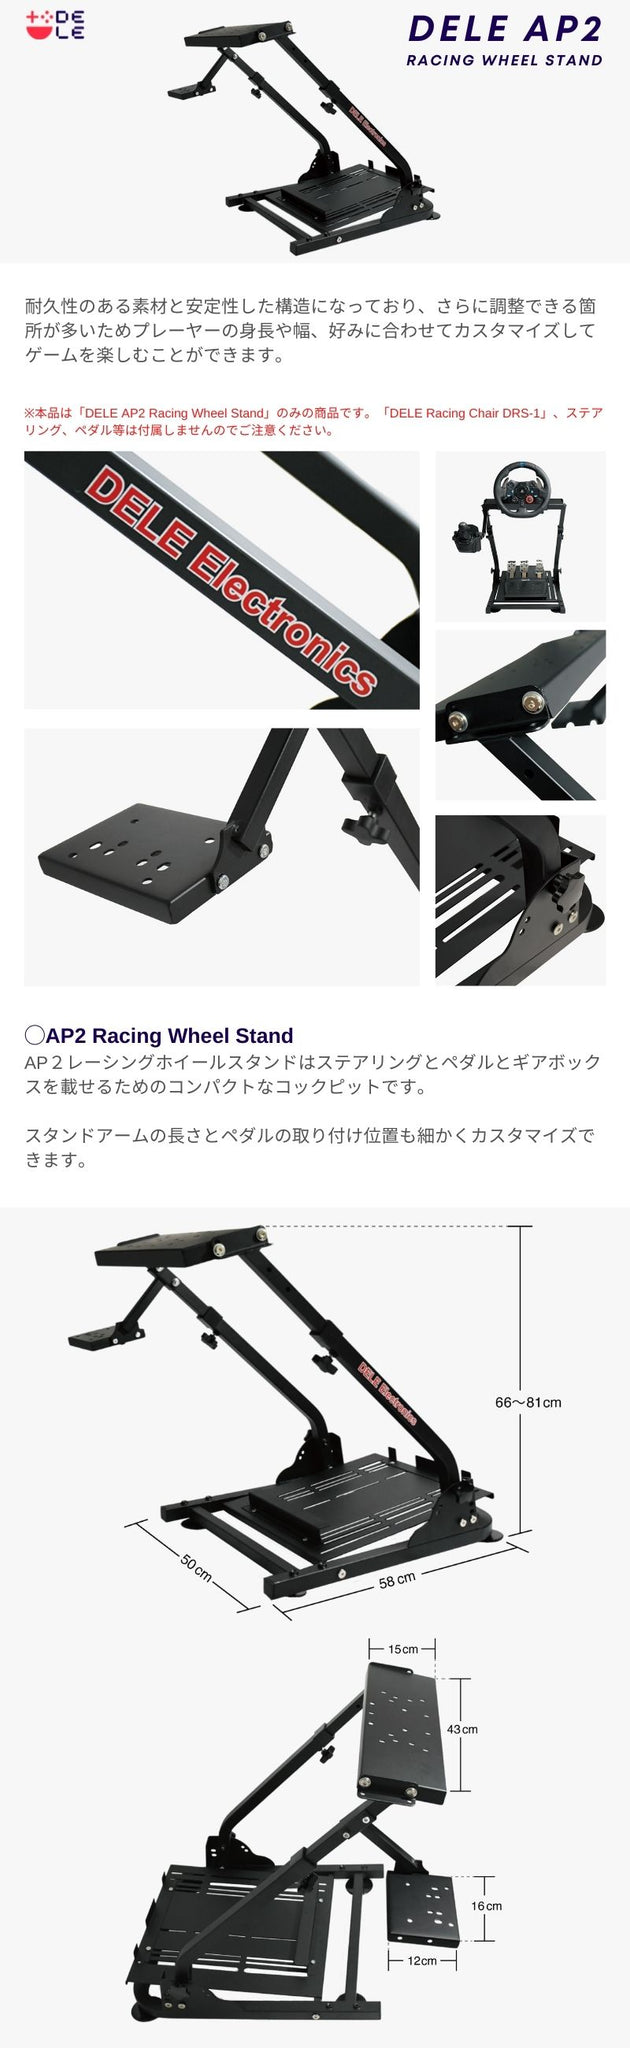 DELE AP2 Racing Wheel Stand ホイールスタンド 折畳式 国内正規品 